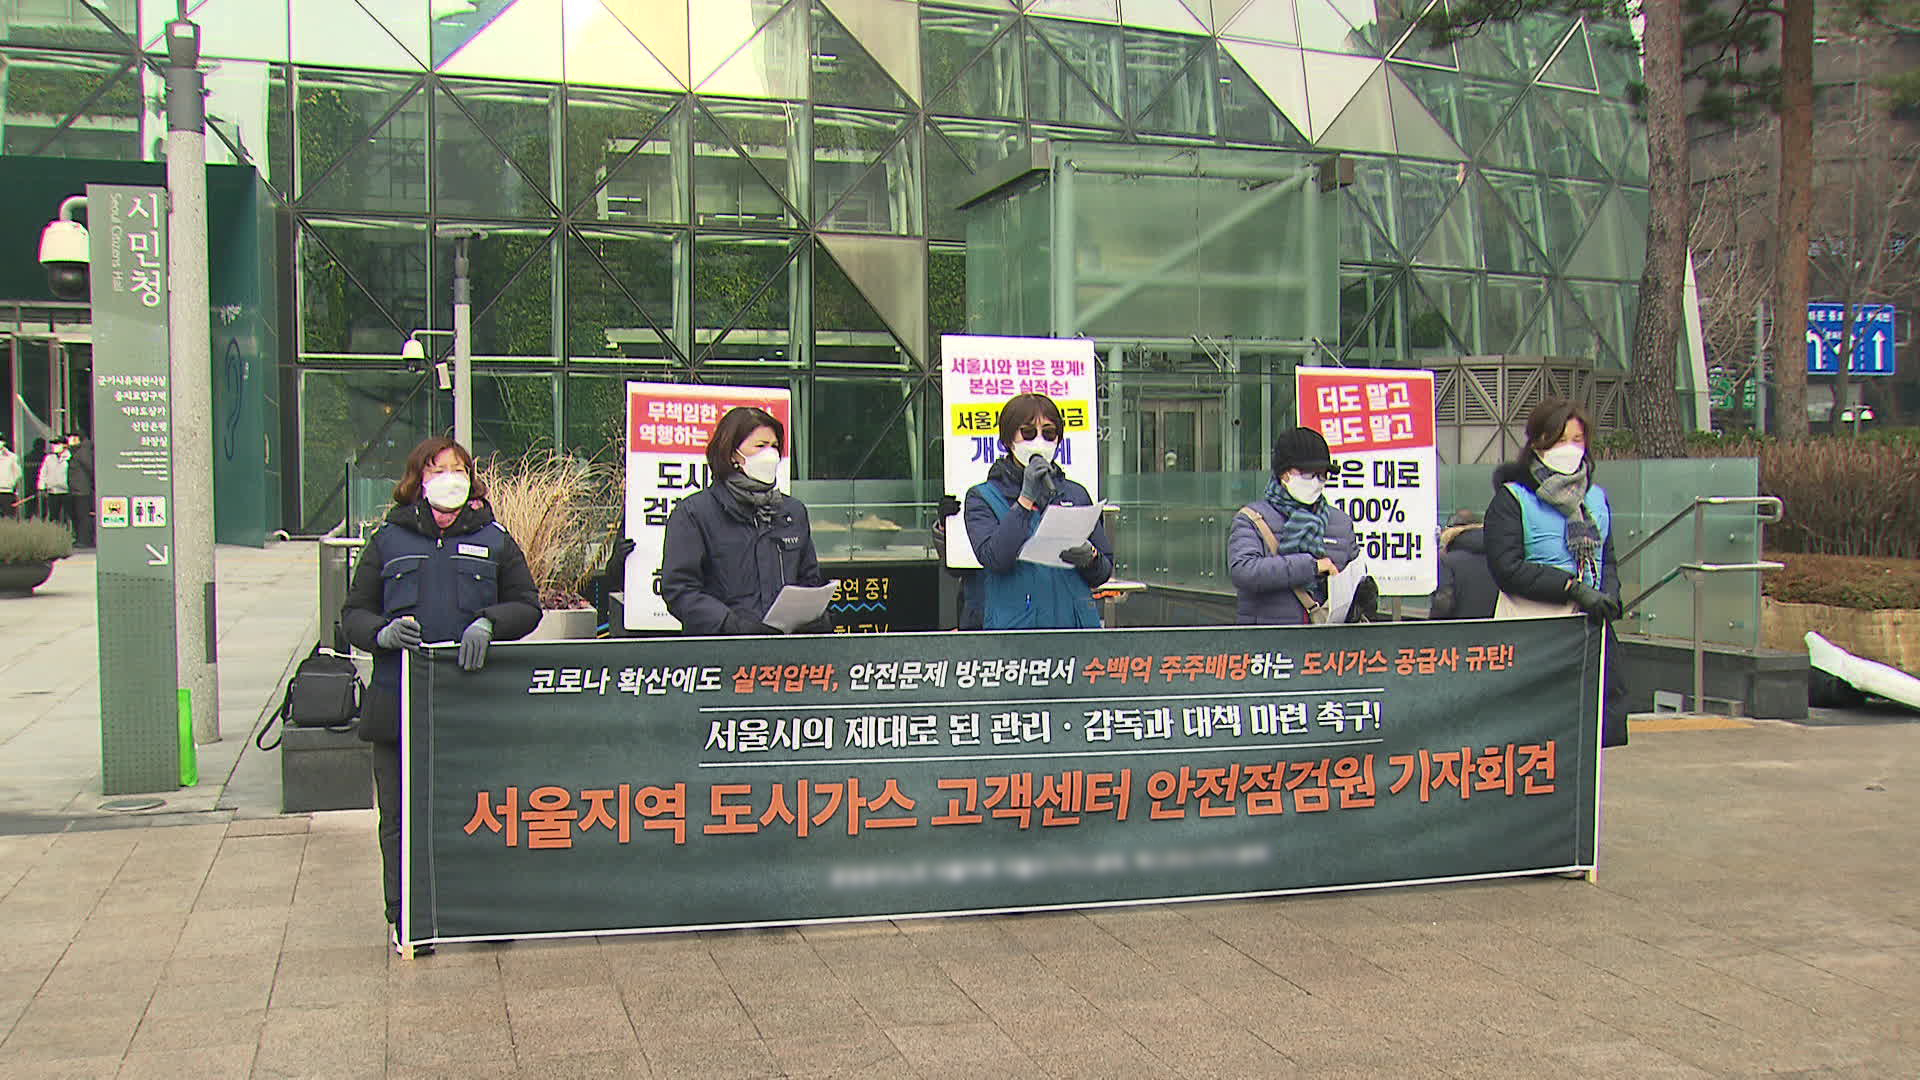 그제(23일) 공공운수노조 서울지부 소속 가스 점검원들이 서울시청 앞에서 규탄 기자회견을 열었다.